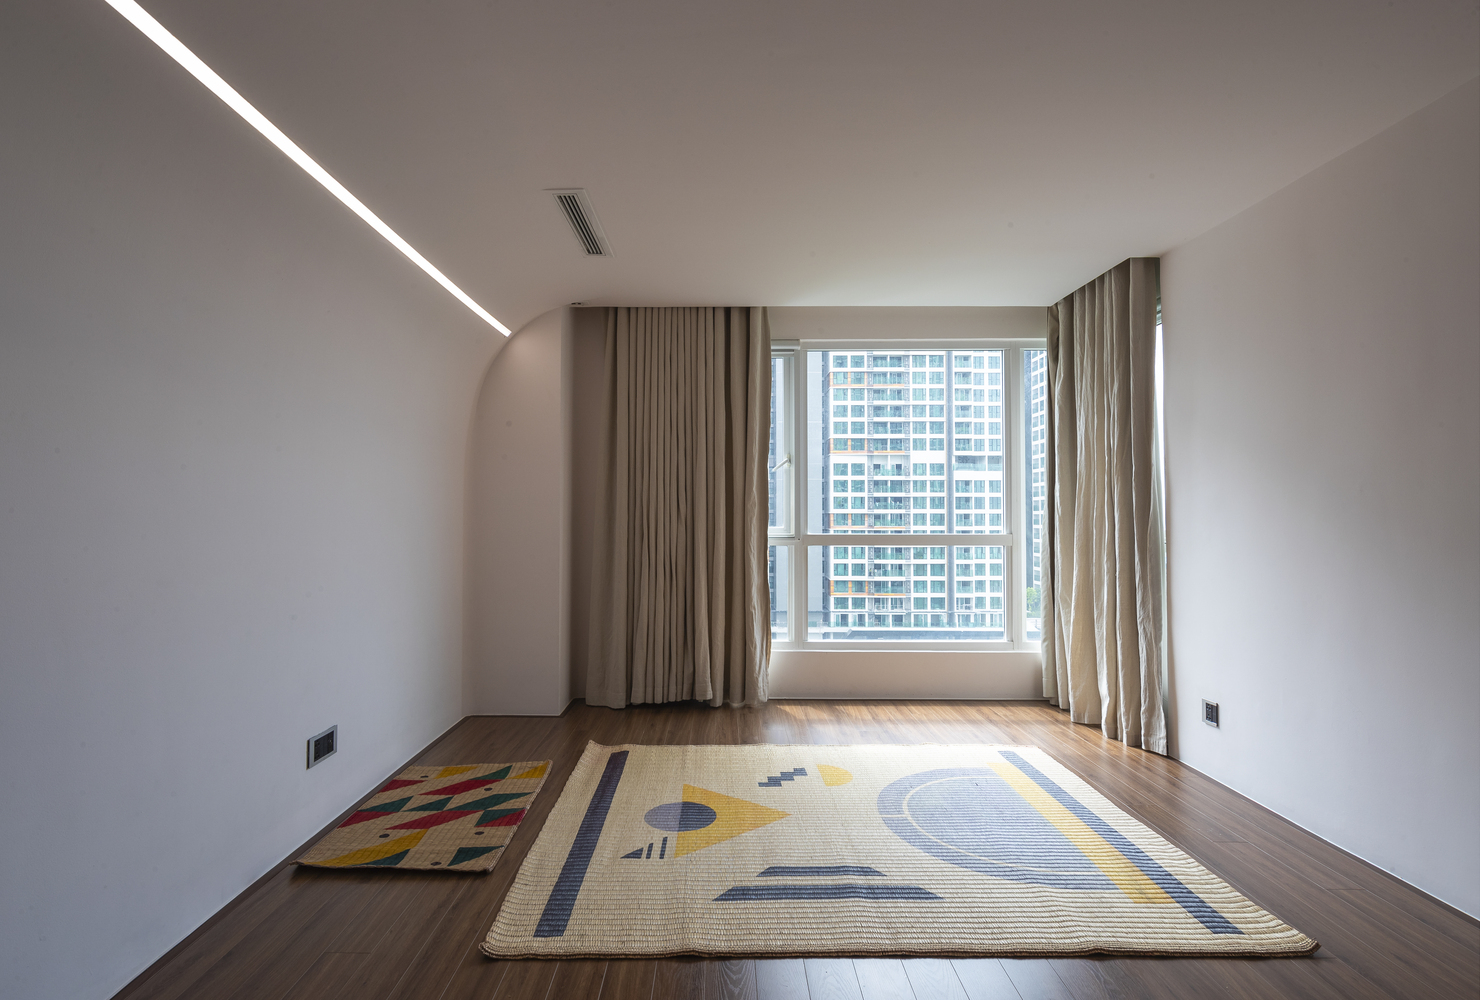 hình ảnh căn phòng rộng rãi, thoáng sáng trong căn hộ đương đại với chiếu trải, thảm màu sắc, khung cửa kính lớn, rèm cửa hai lớp